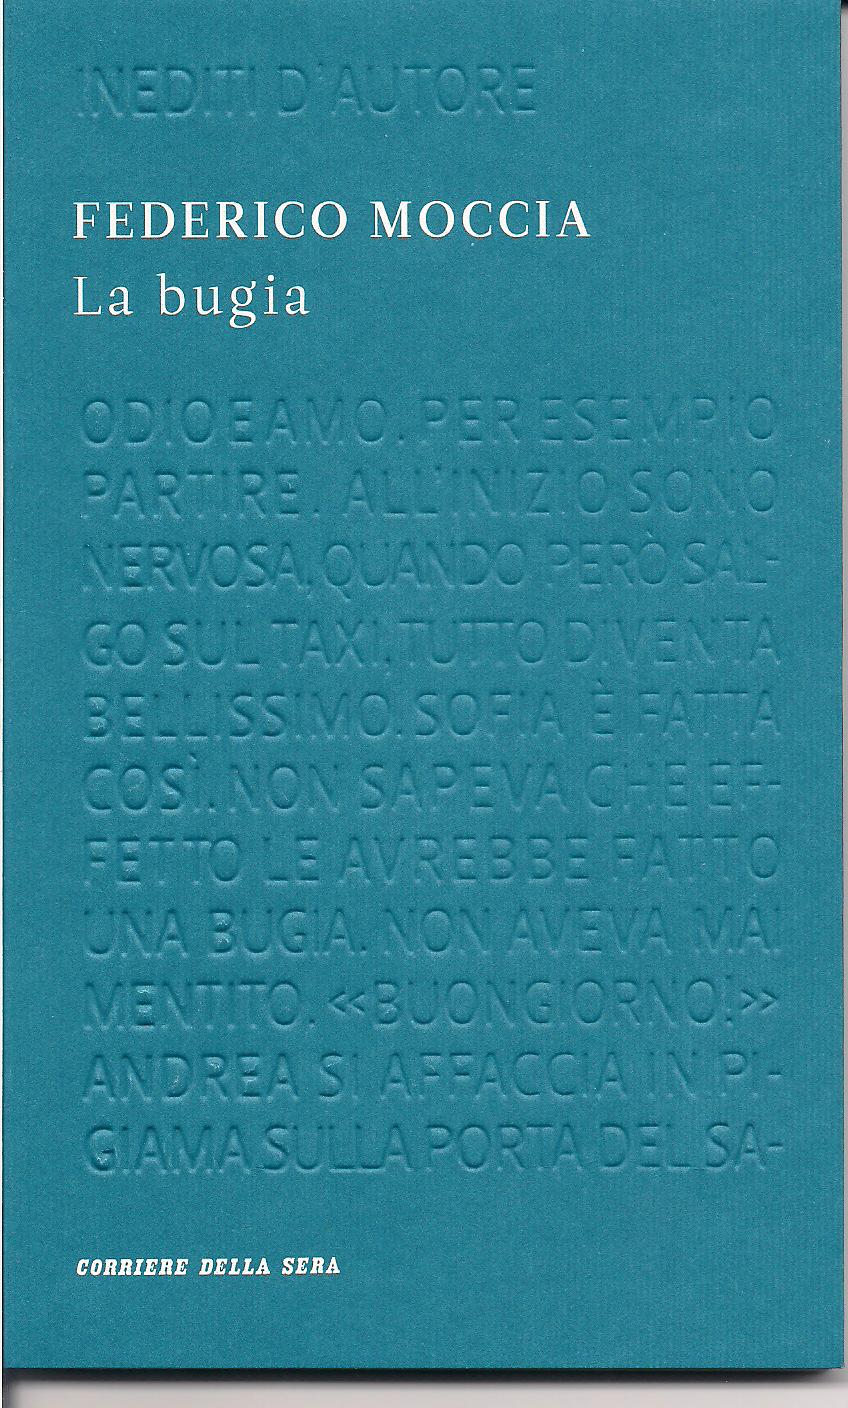 More about La bugia